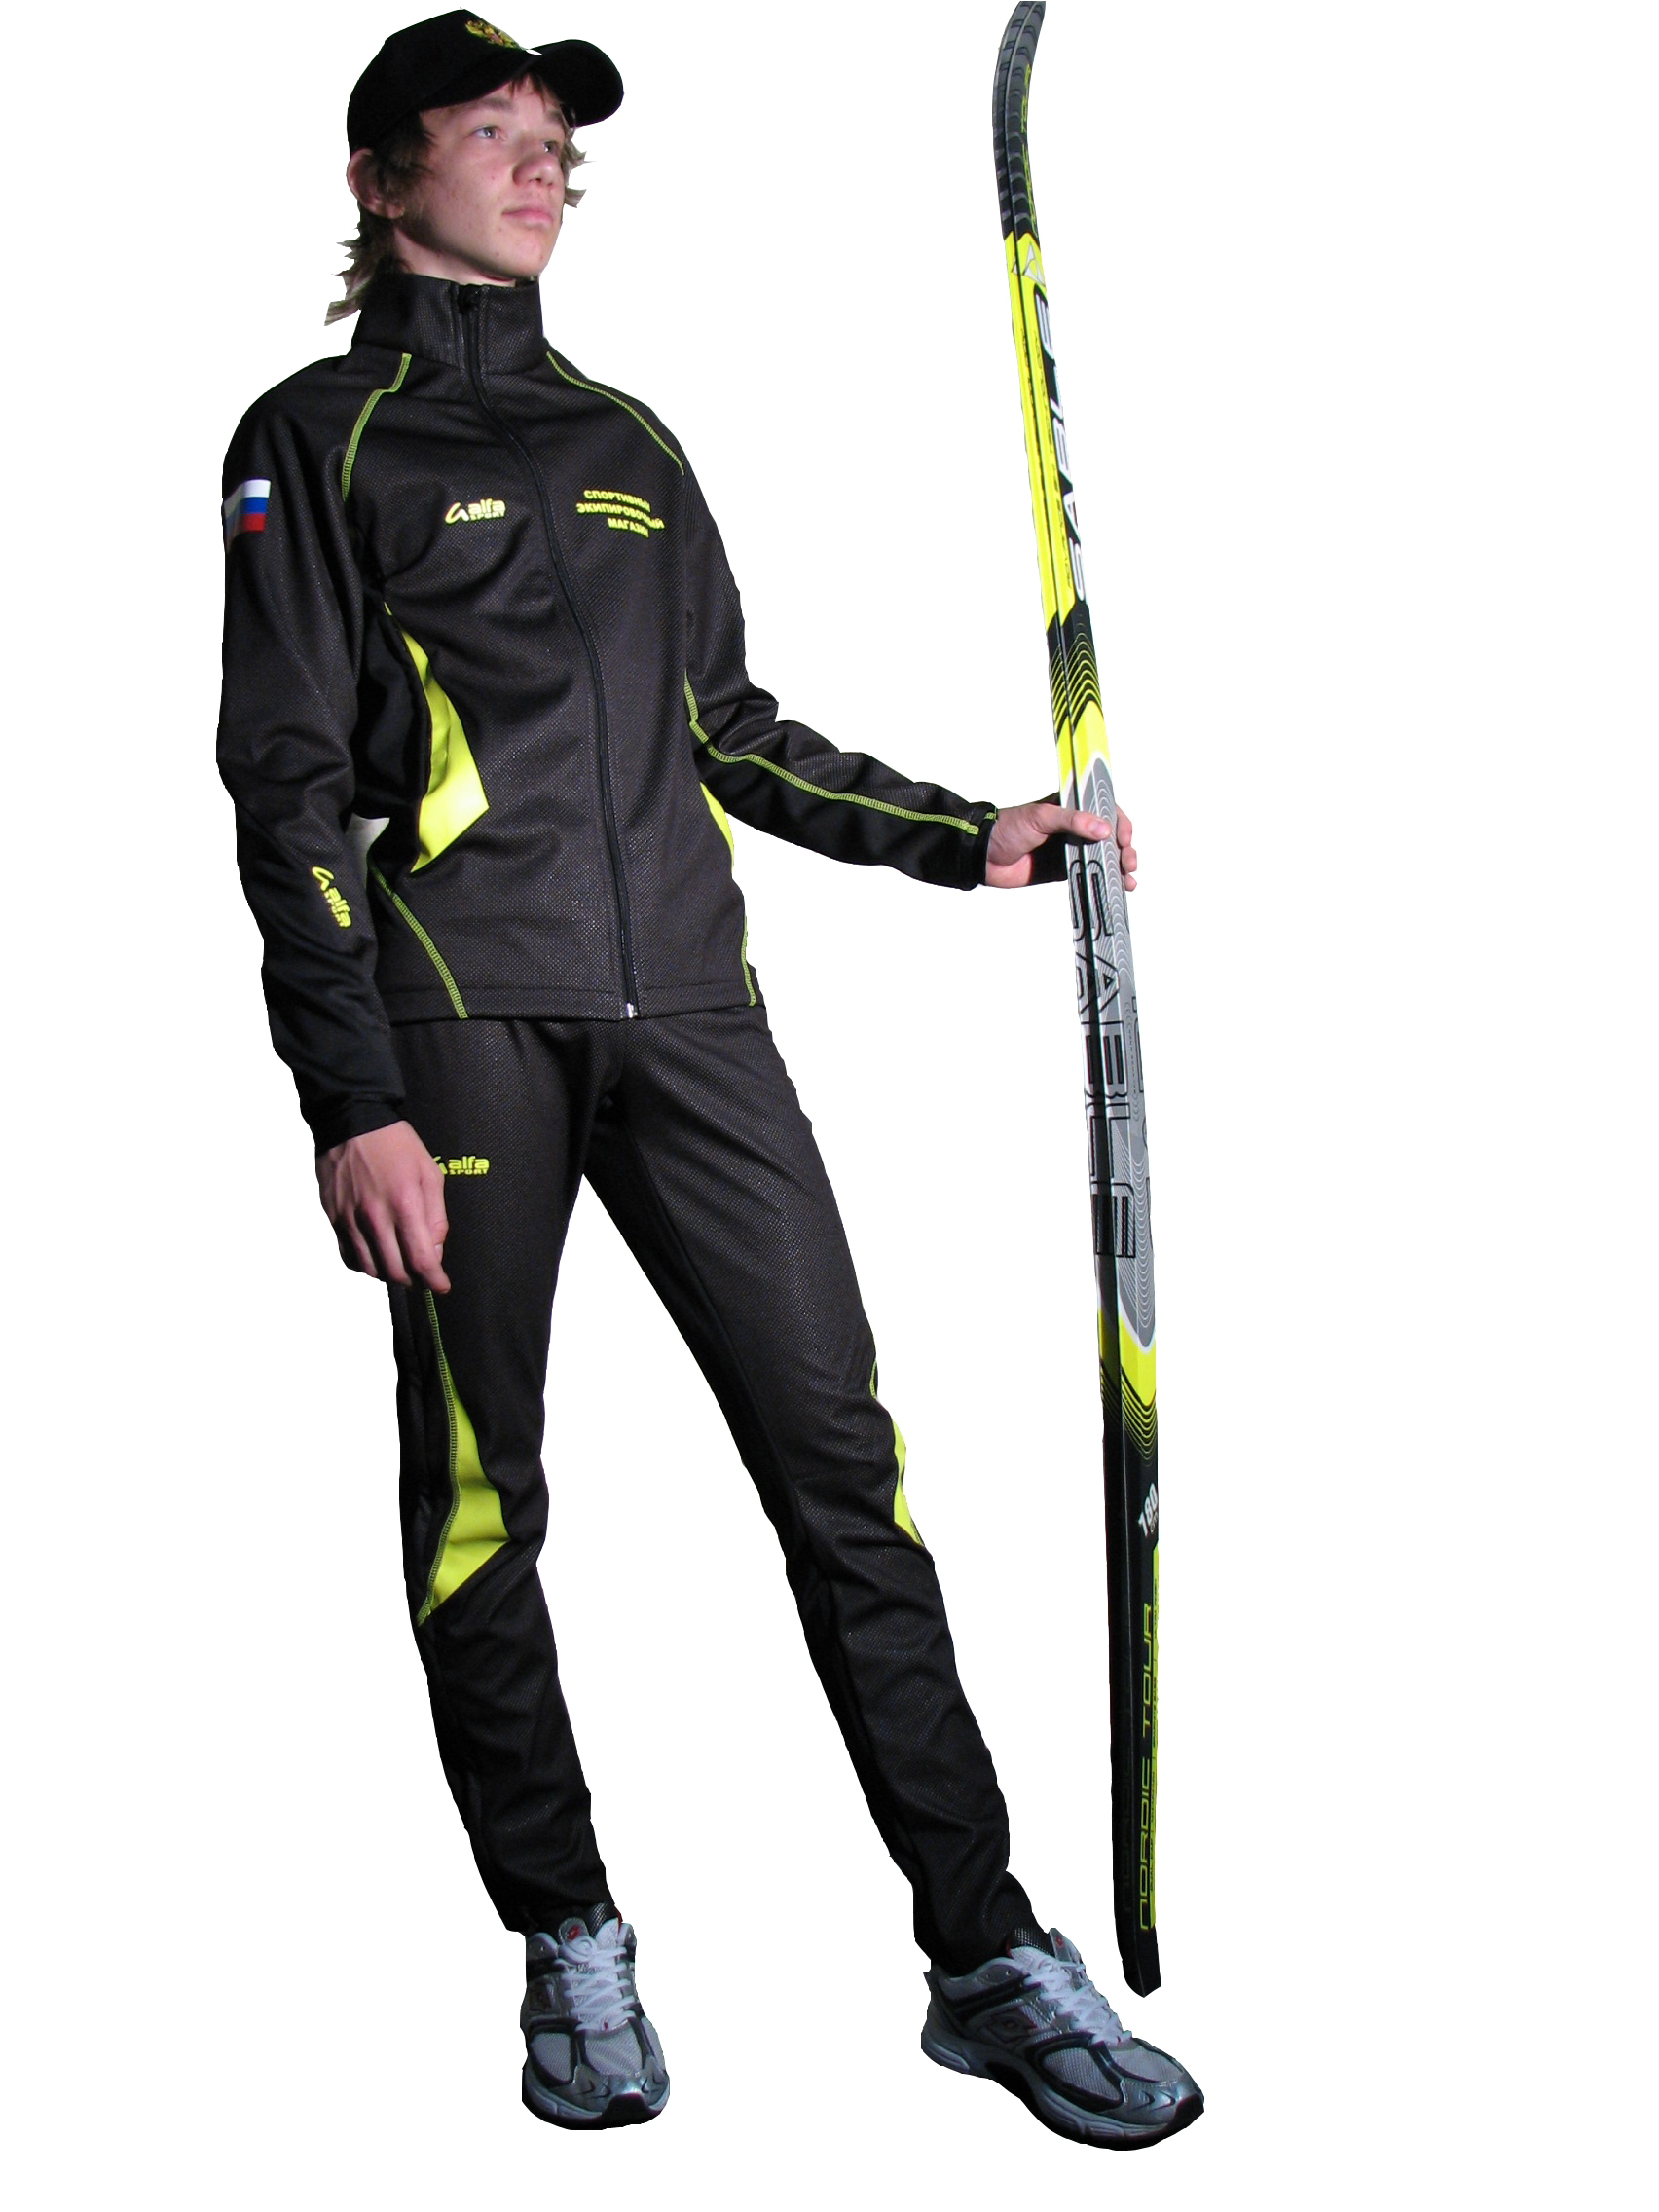 Ski forms. Лыжный разминочный костюм Fischer. Разминочный костюм для лыжников Fischer. Лыжный костюм Фишер мужской для беговых лыж. Разминочный костюм Фишер для беговых лыж.